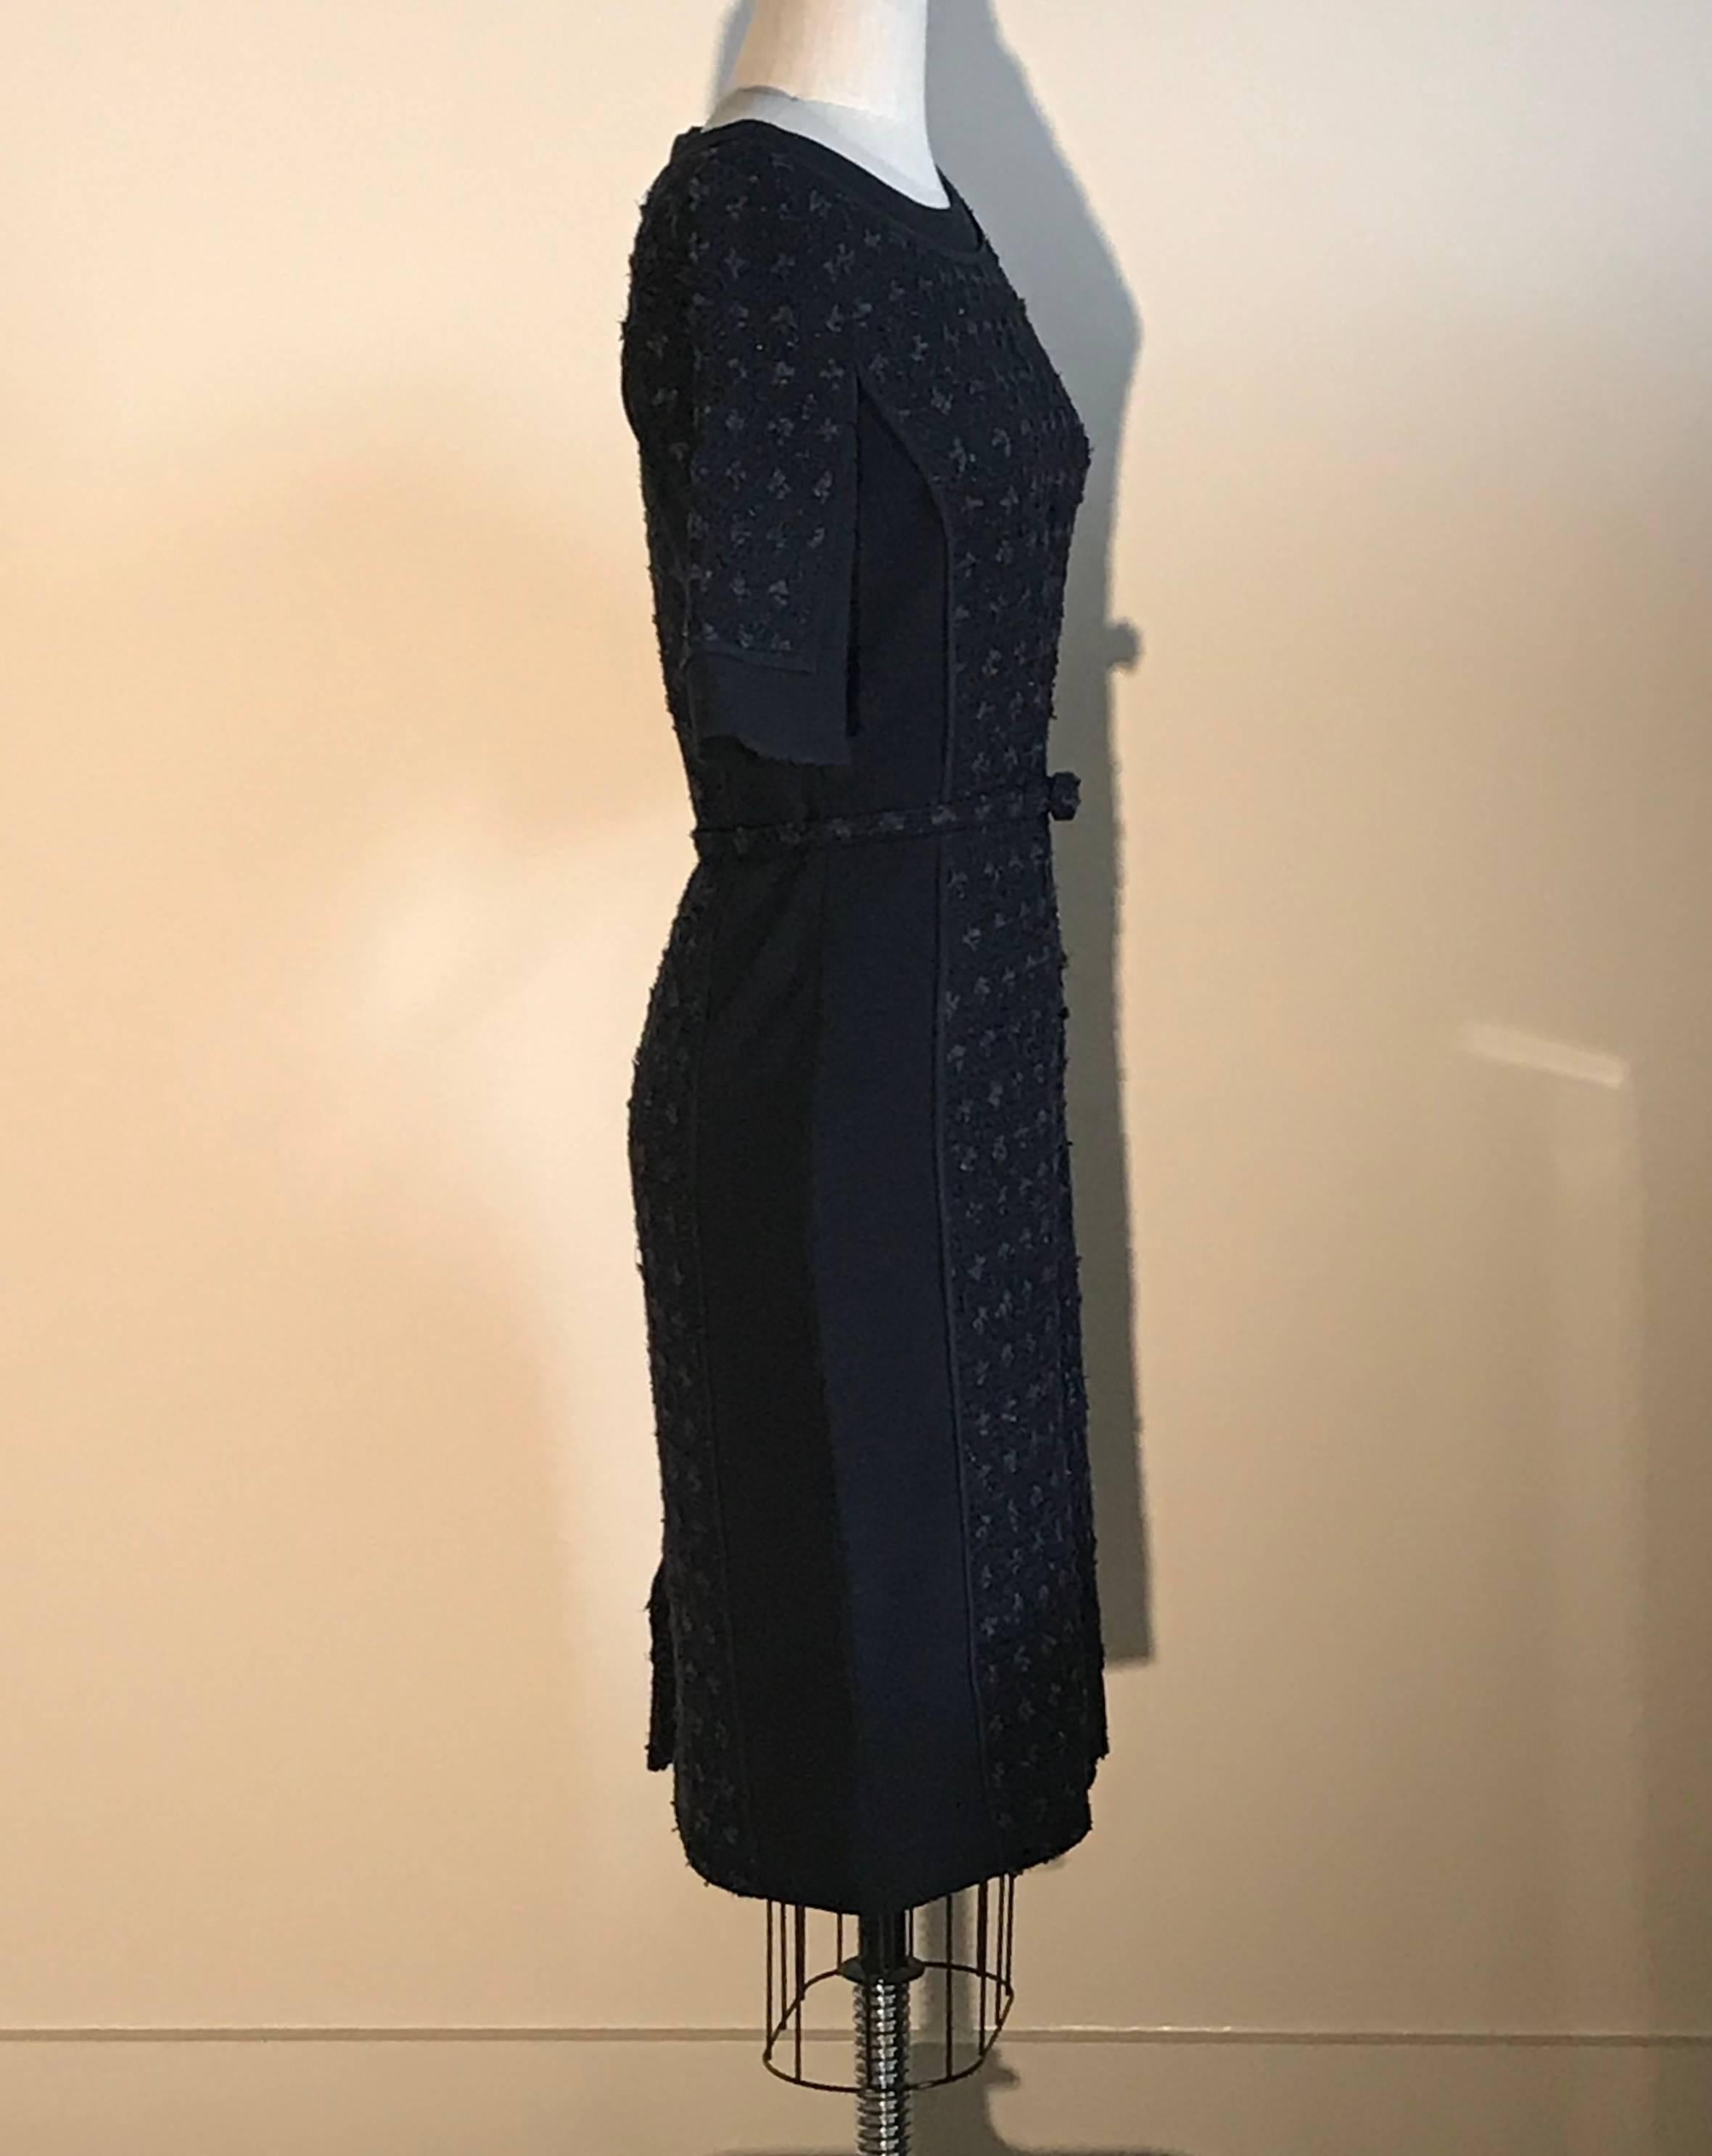 Black Oscar de la Renta Navy Blue Tweed Front Belted Dress with Metallic Accents